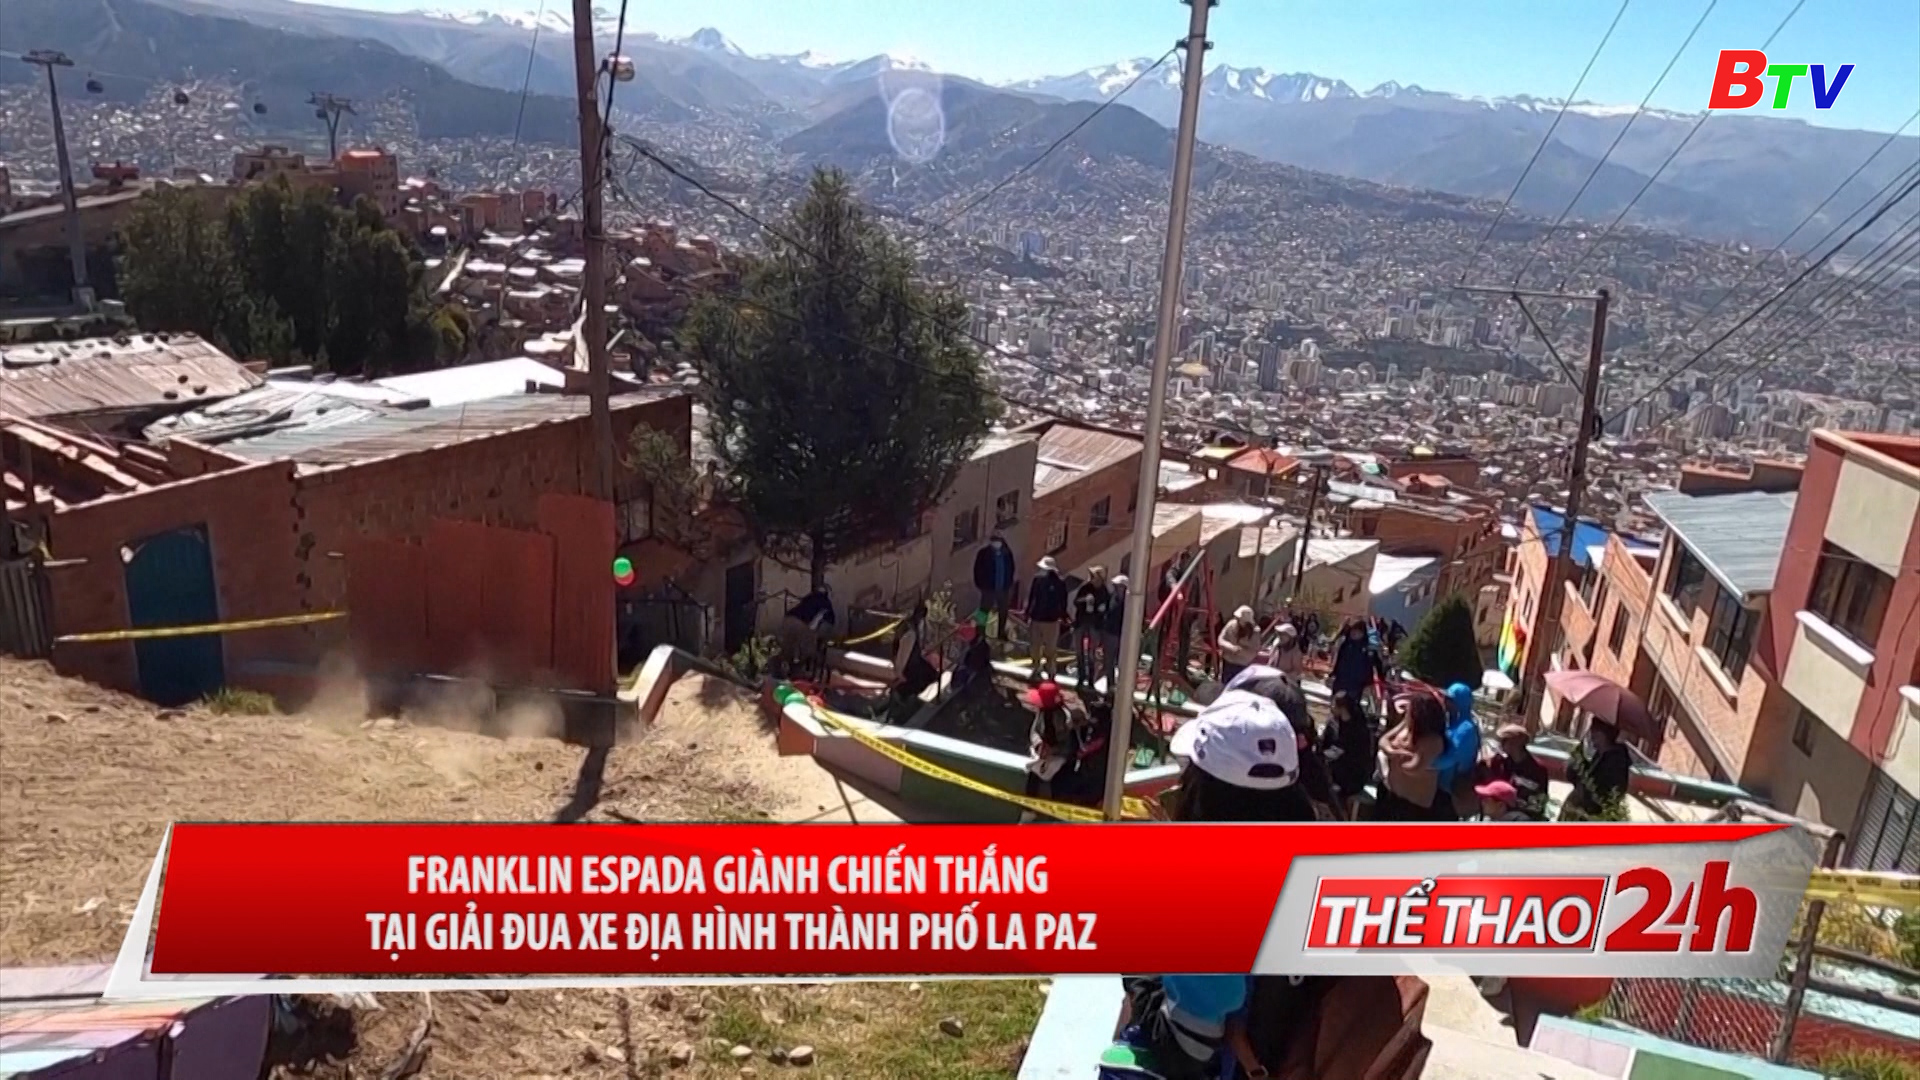 Franklin Espada giành chiến thắng tại Giải đua xe địa hình thành phố La Paz